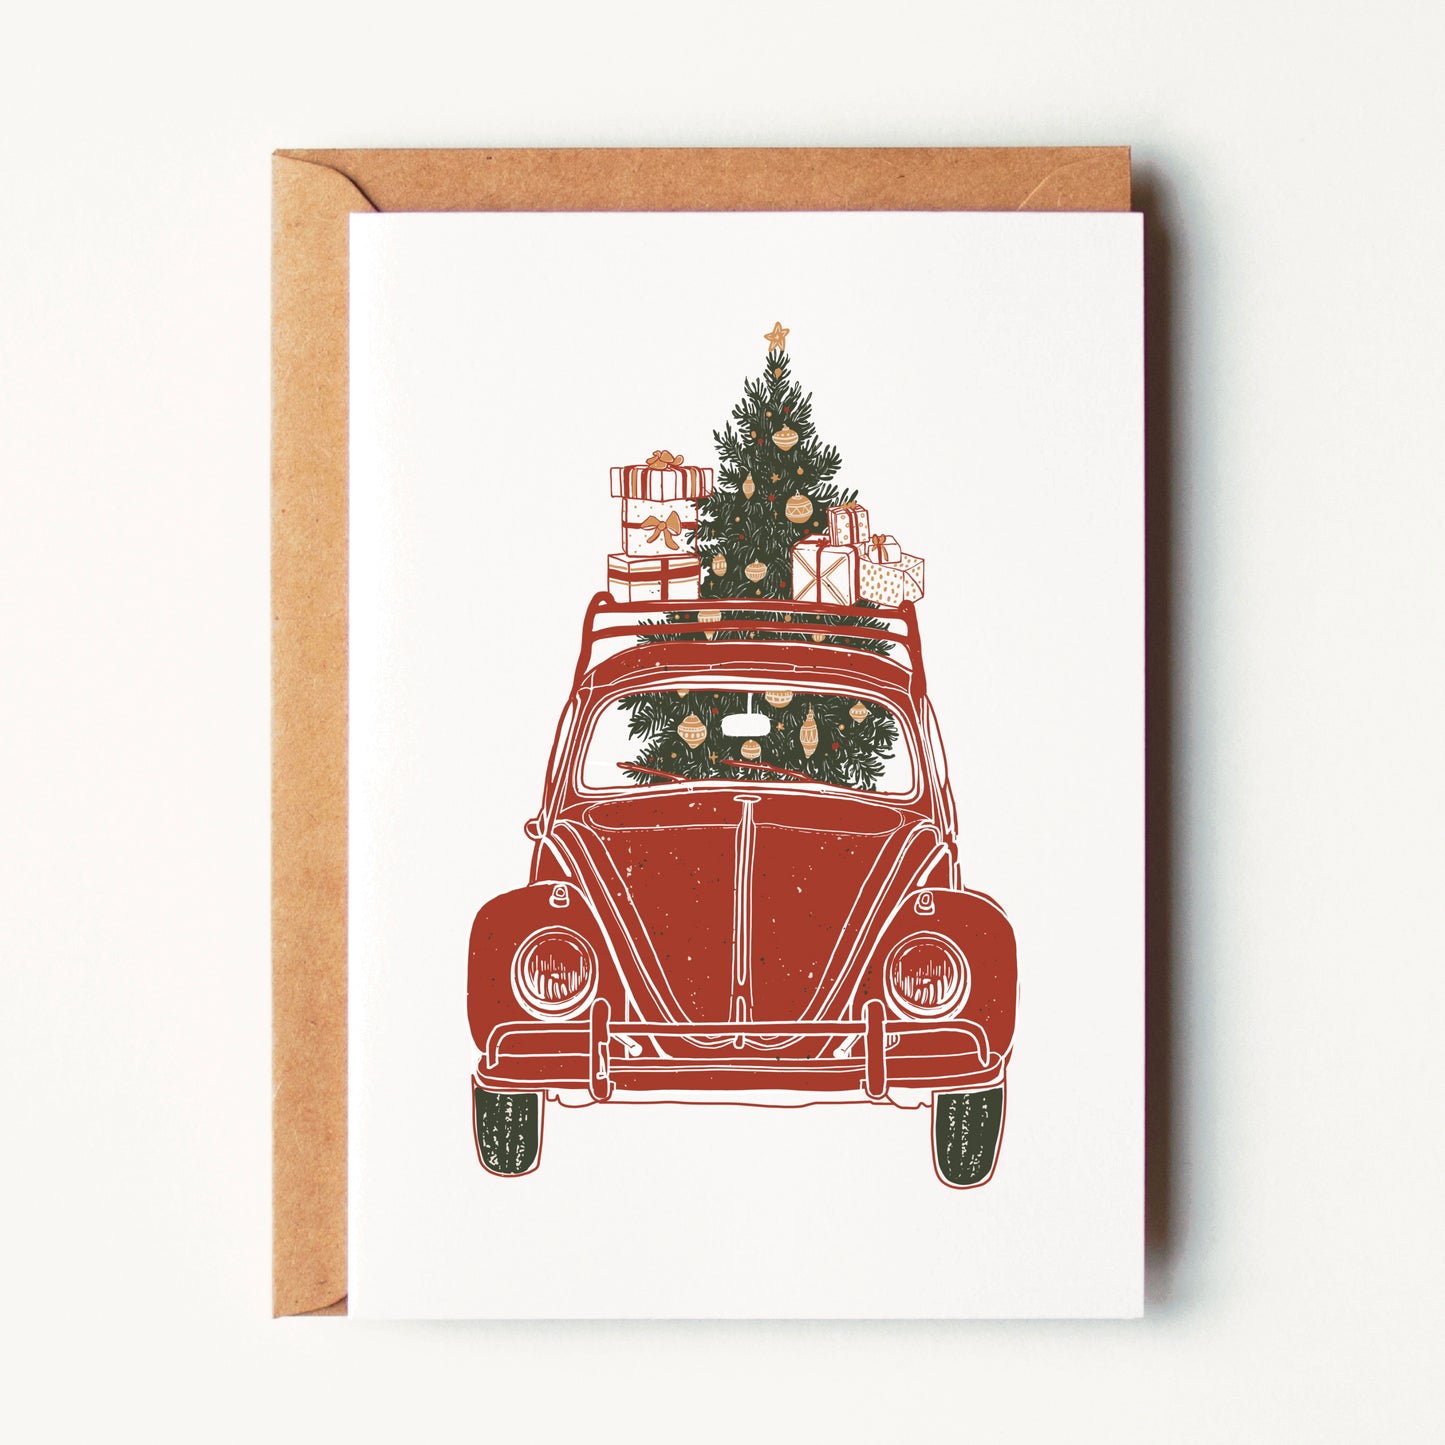 Tis the Season, Festive Christmas Bug Greeting Card